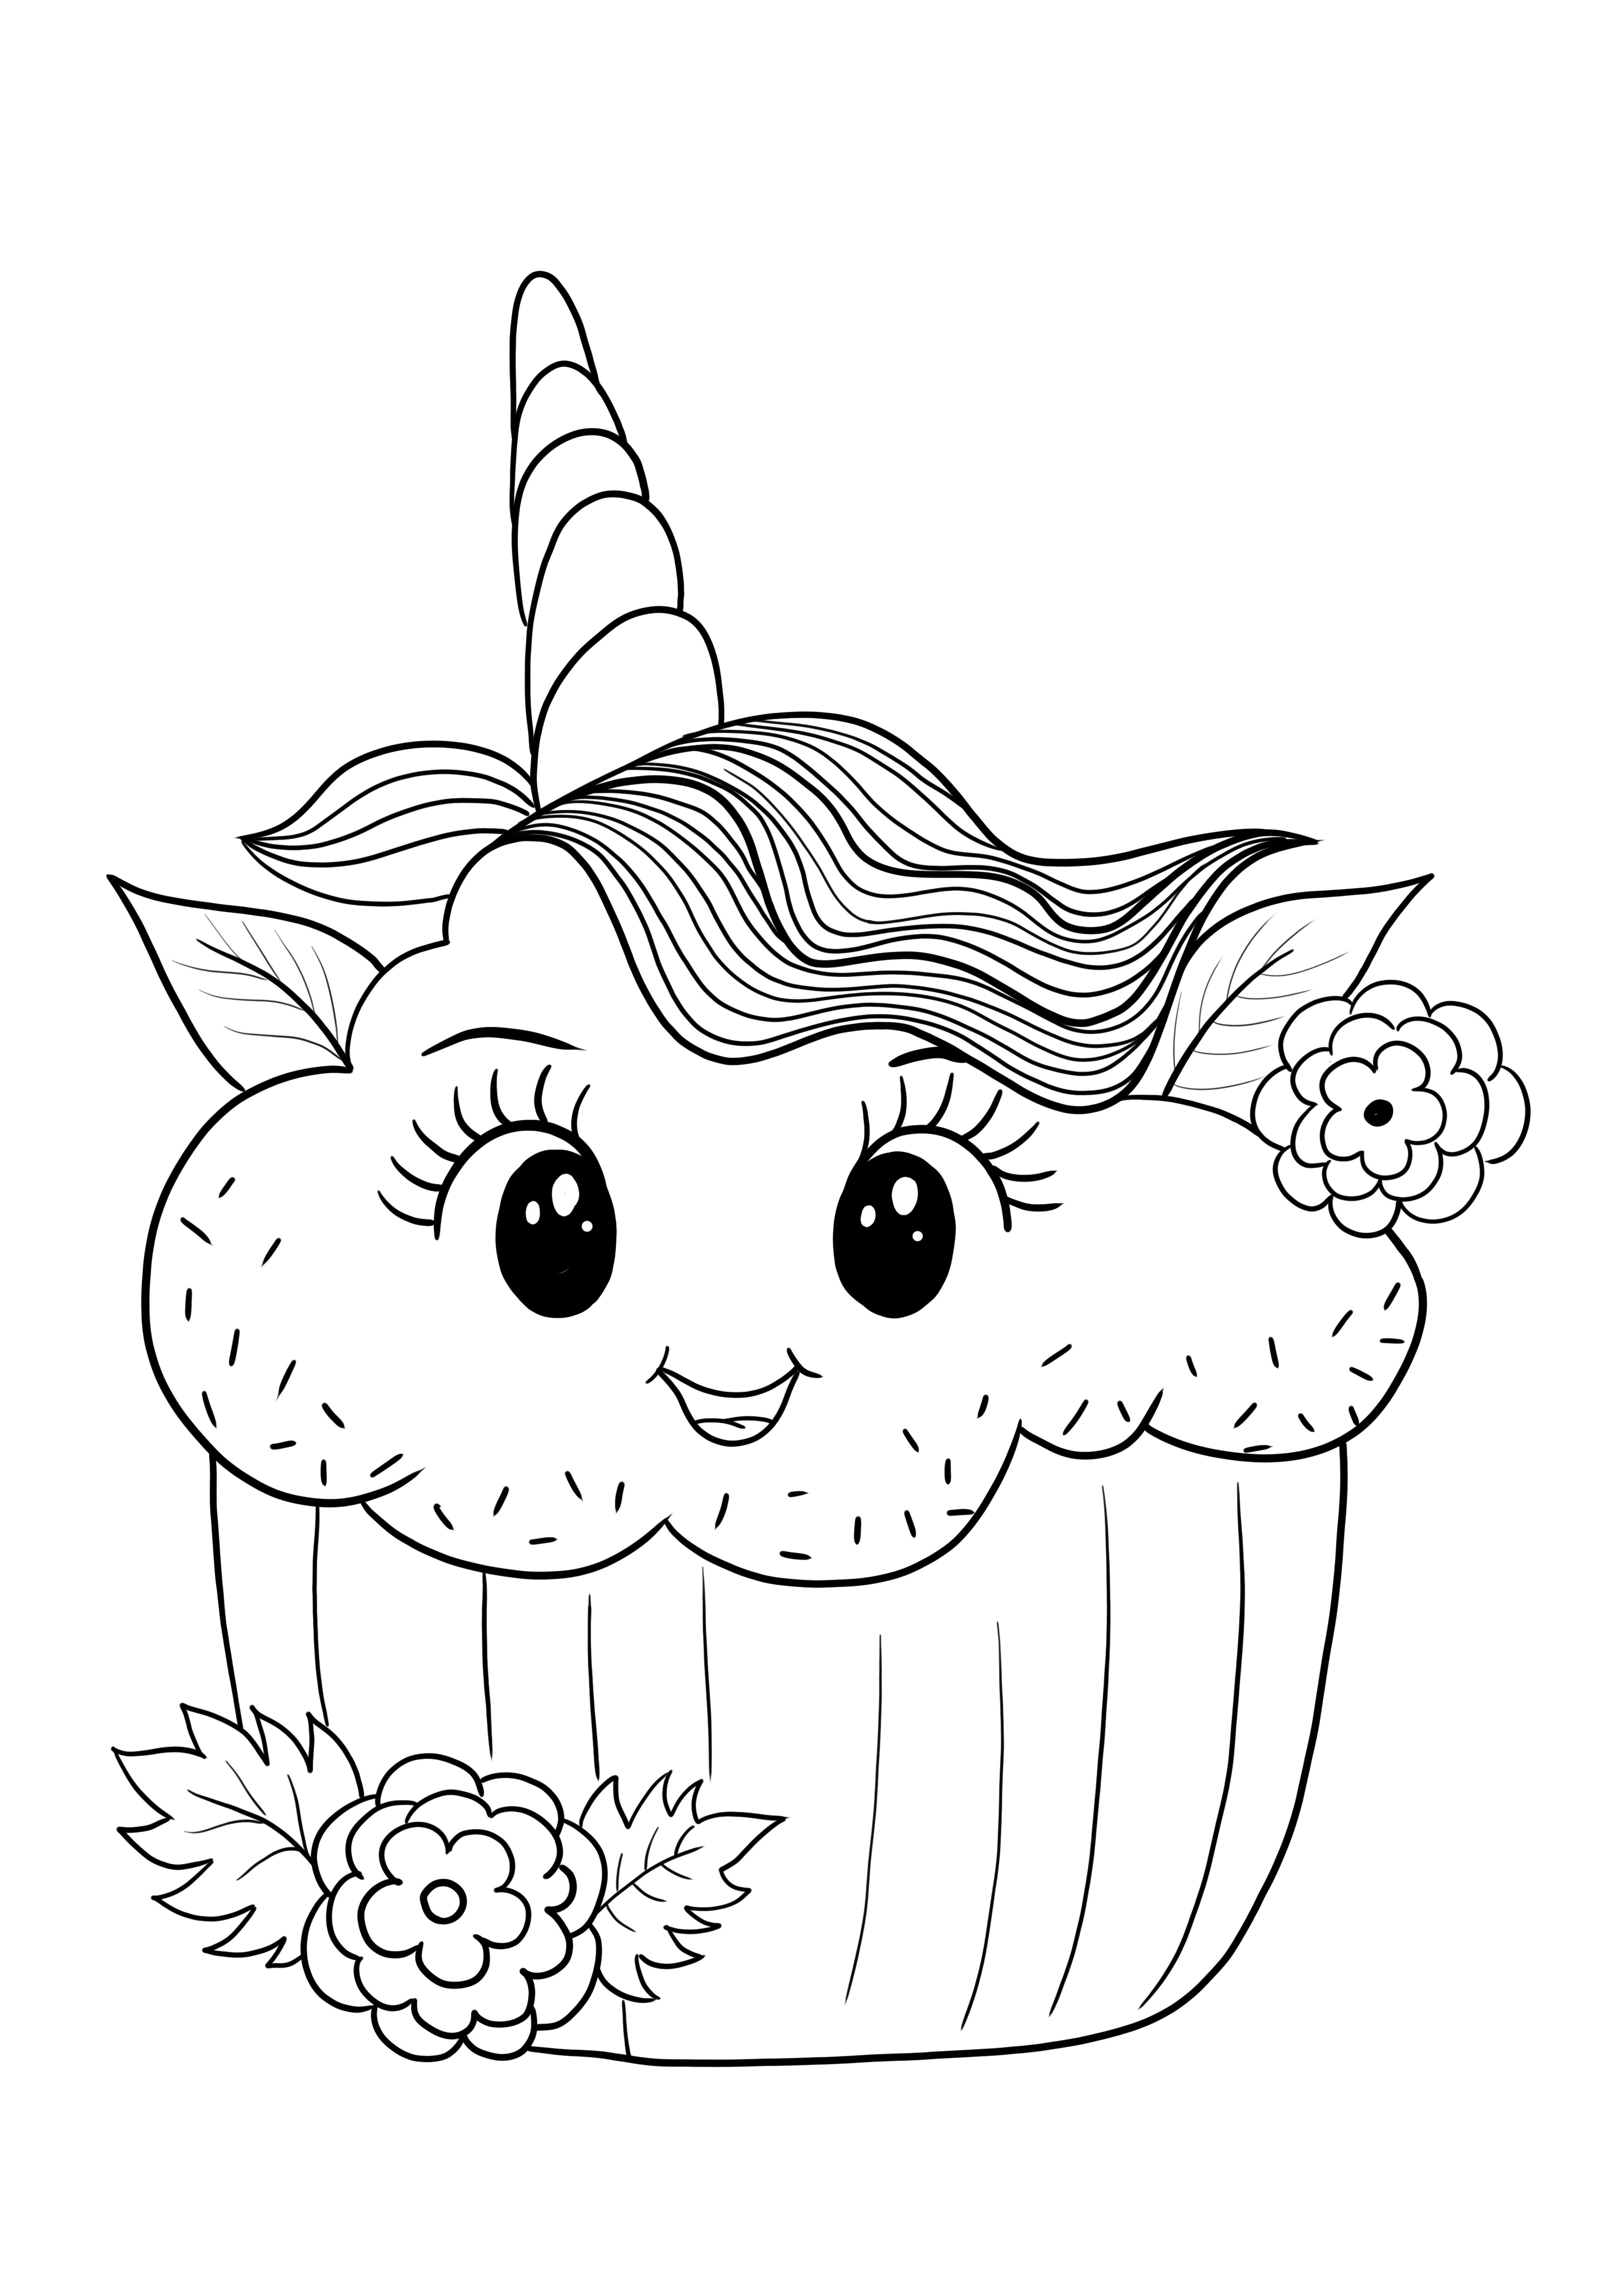 Gambar cupcake unicorn Shopkins untuk pencetakan gratis